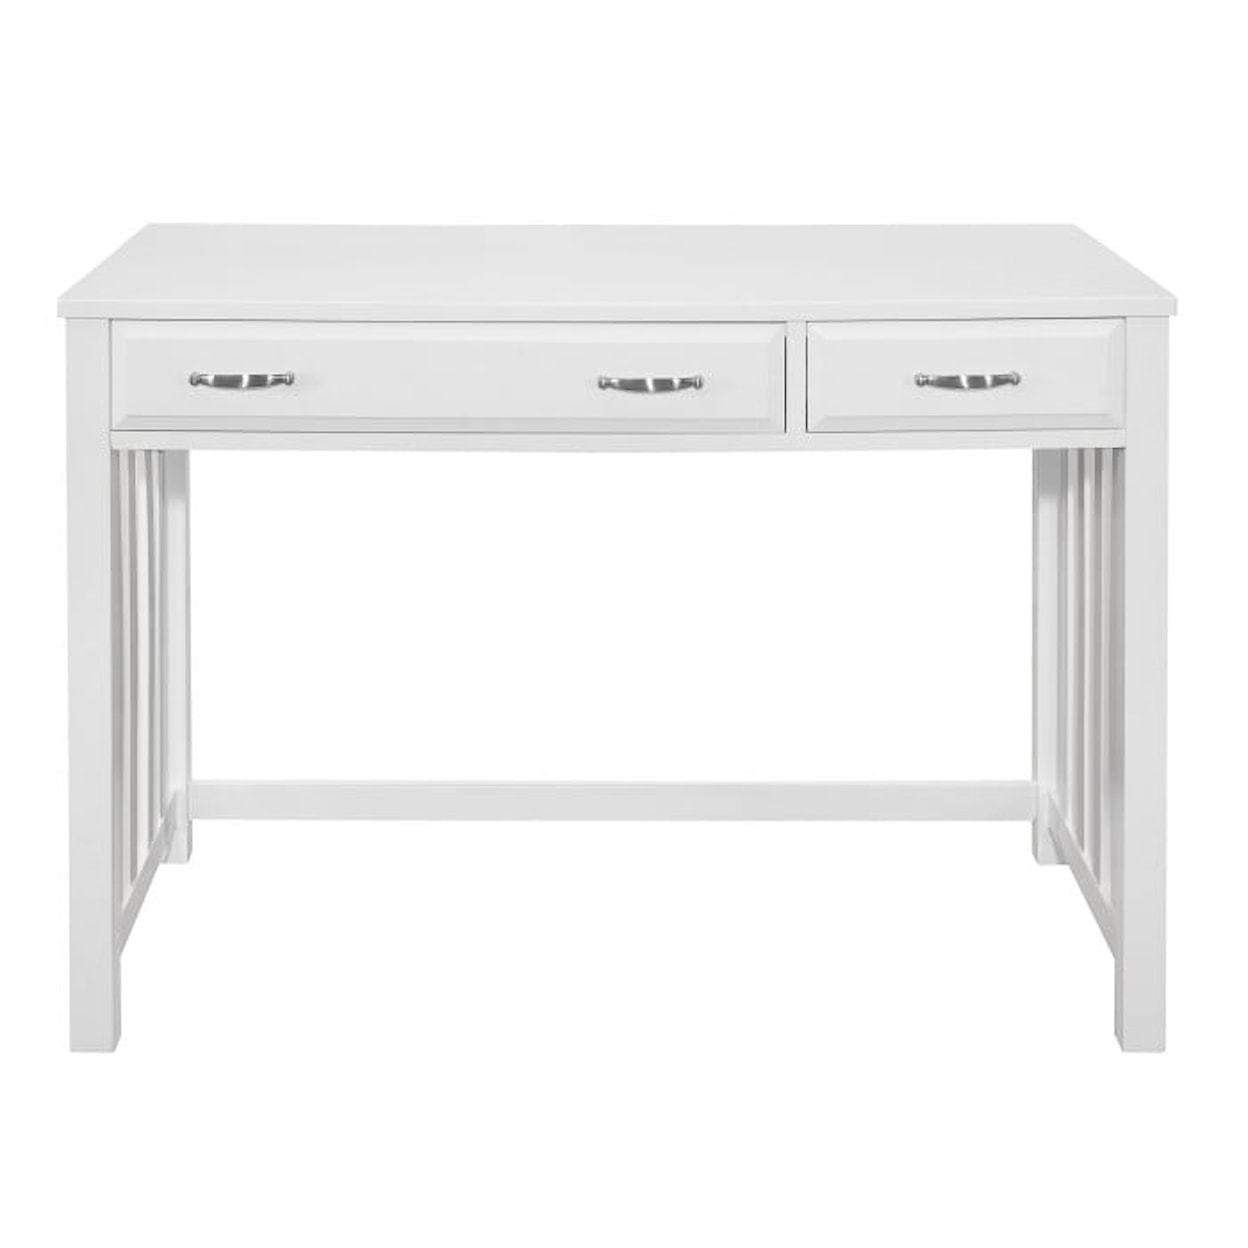 Homelegance Furniture Blanche Desk